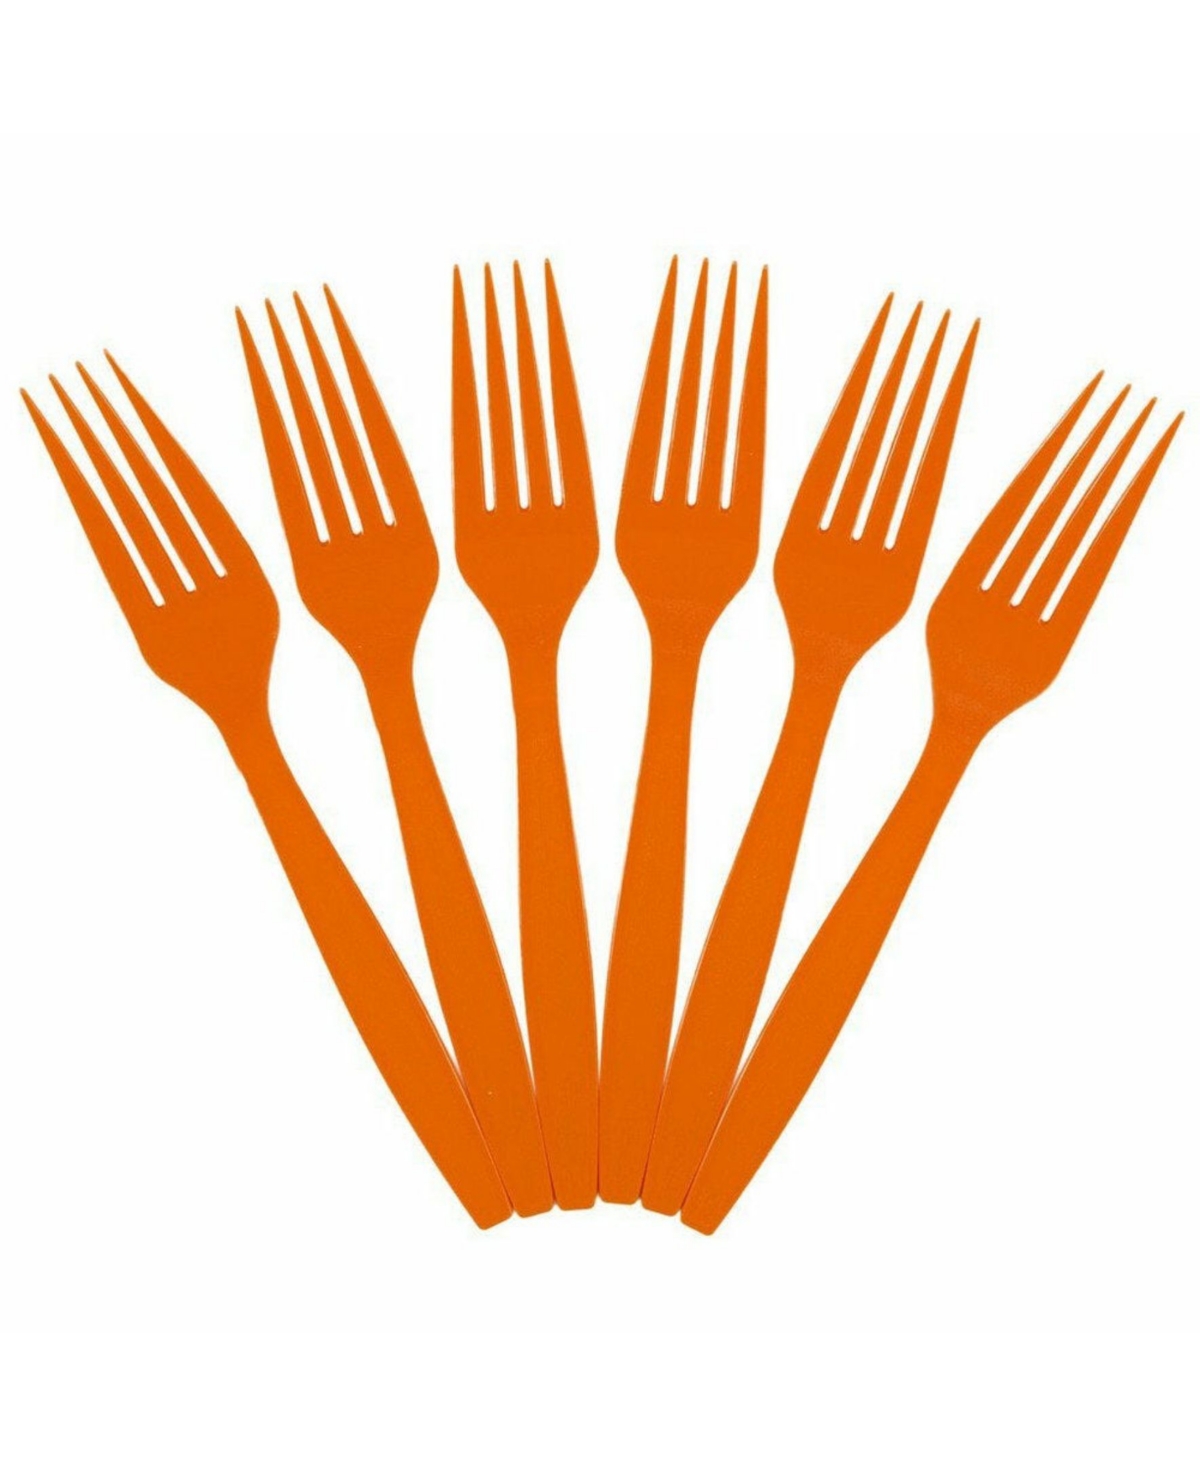 Jam Paper Big Party Pack Of Premium Plastic Forks In Orange